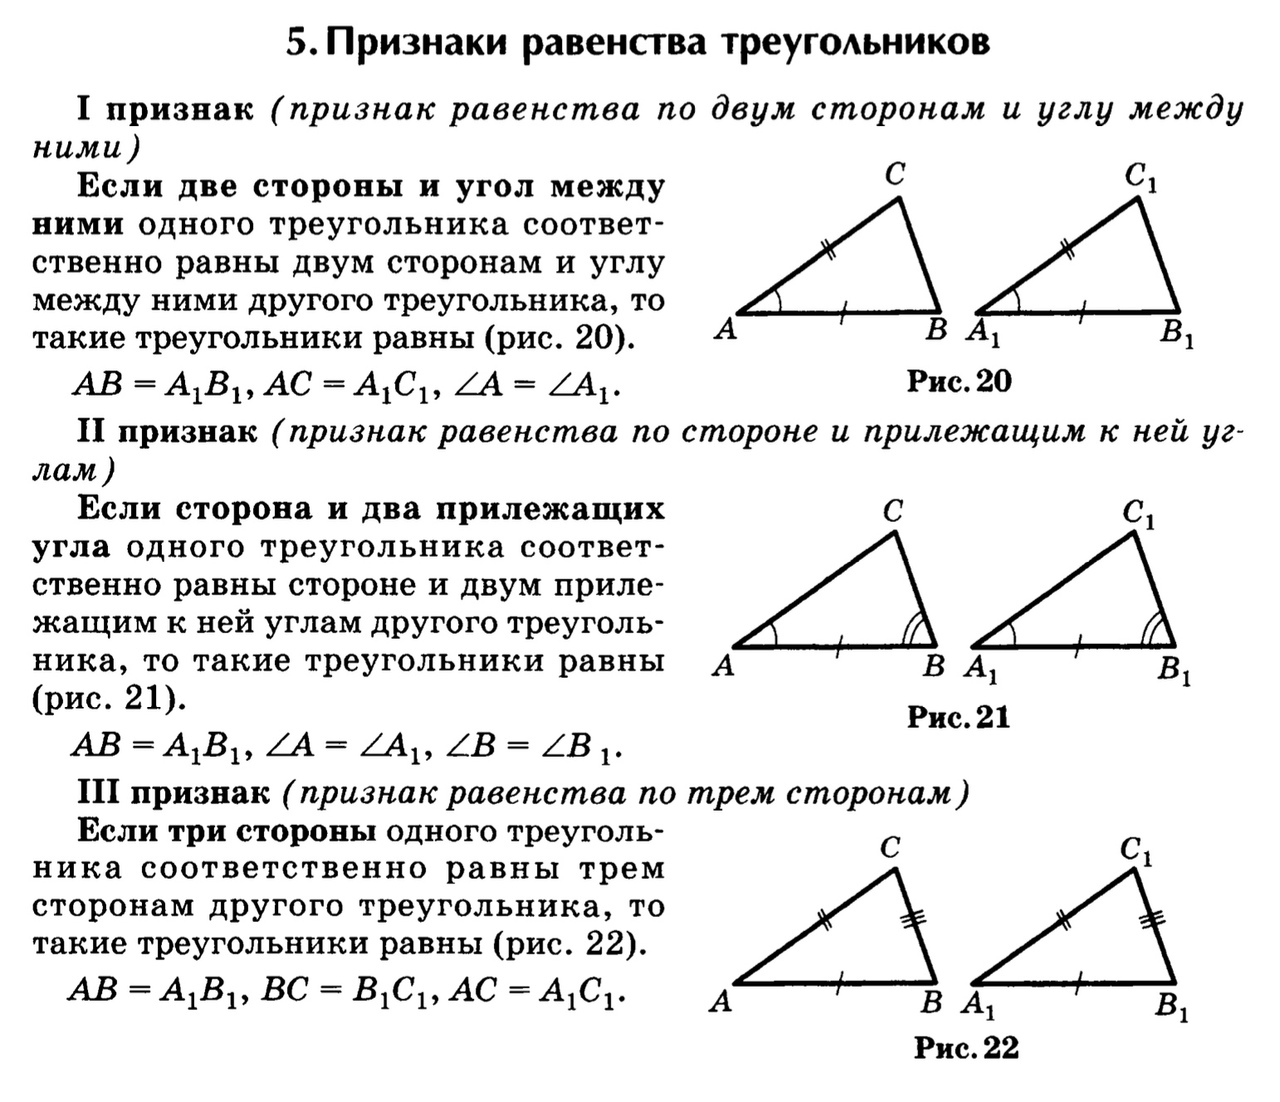 Определить признаки равенства треугольников